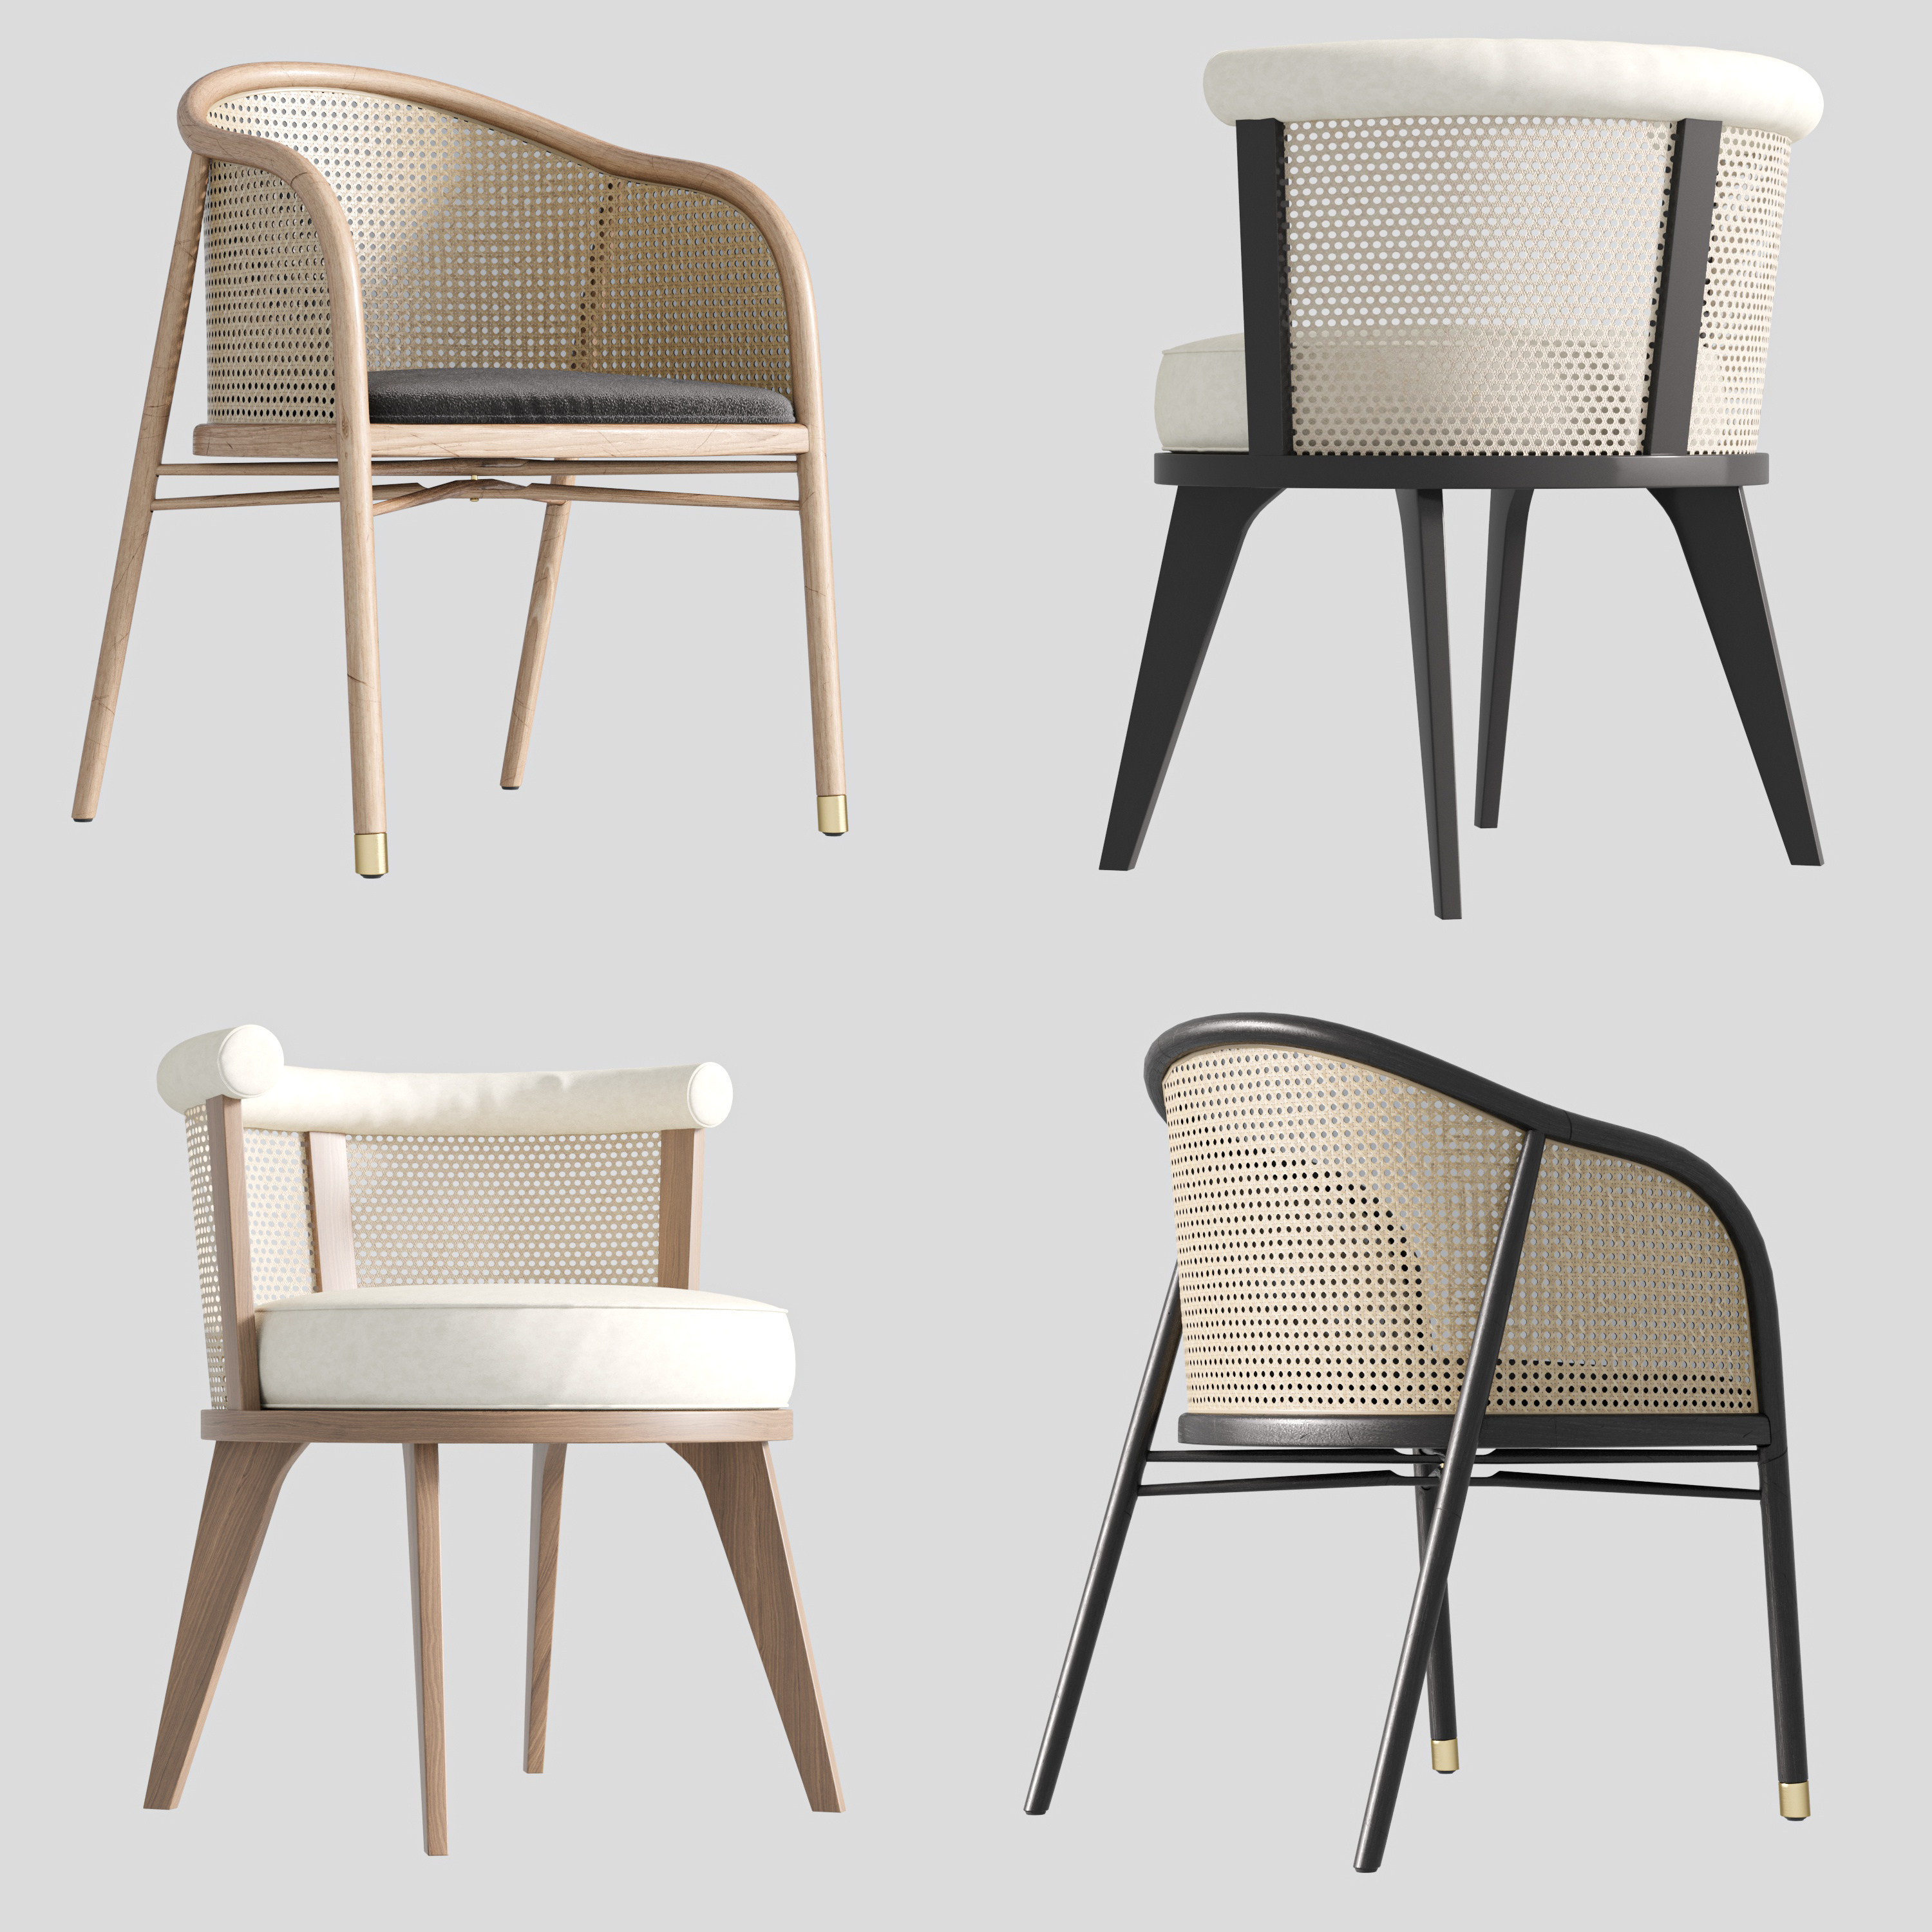 15现代北欧日系编藤餐椅扶手椅,餐椅,椅子,新中式餐椅,3d模型下载